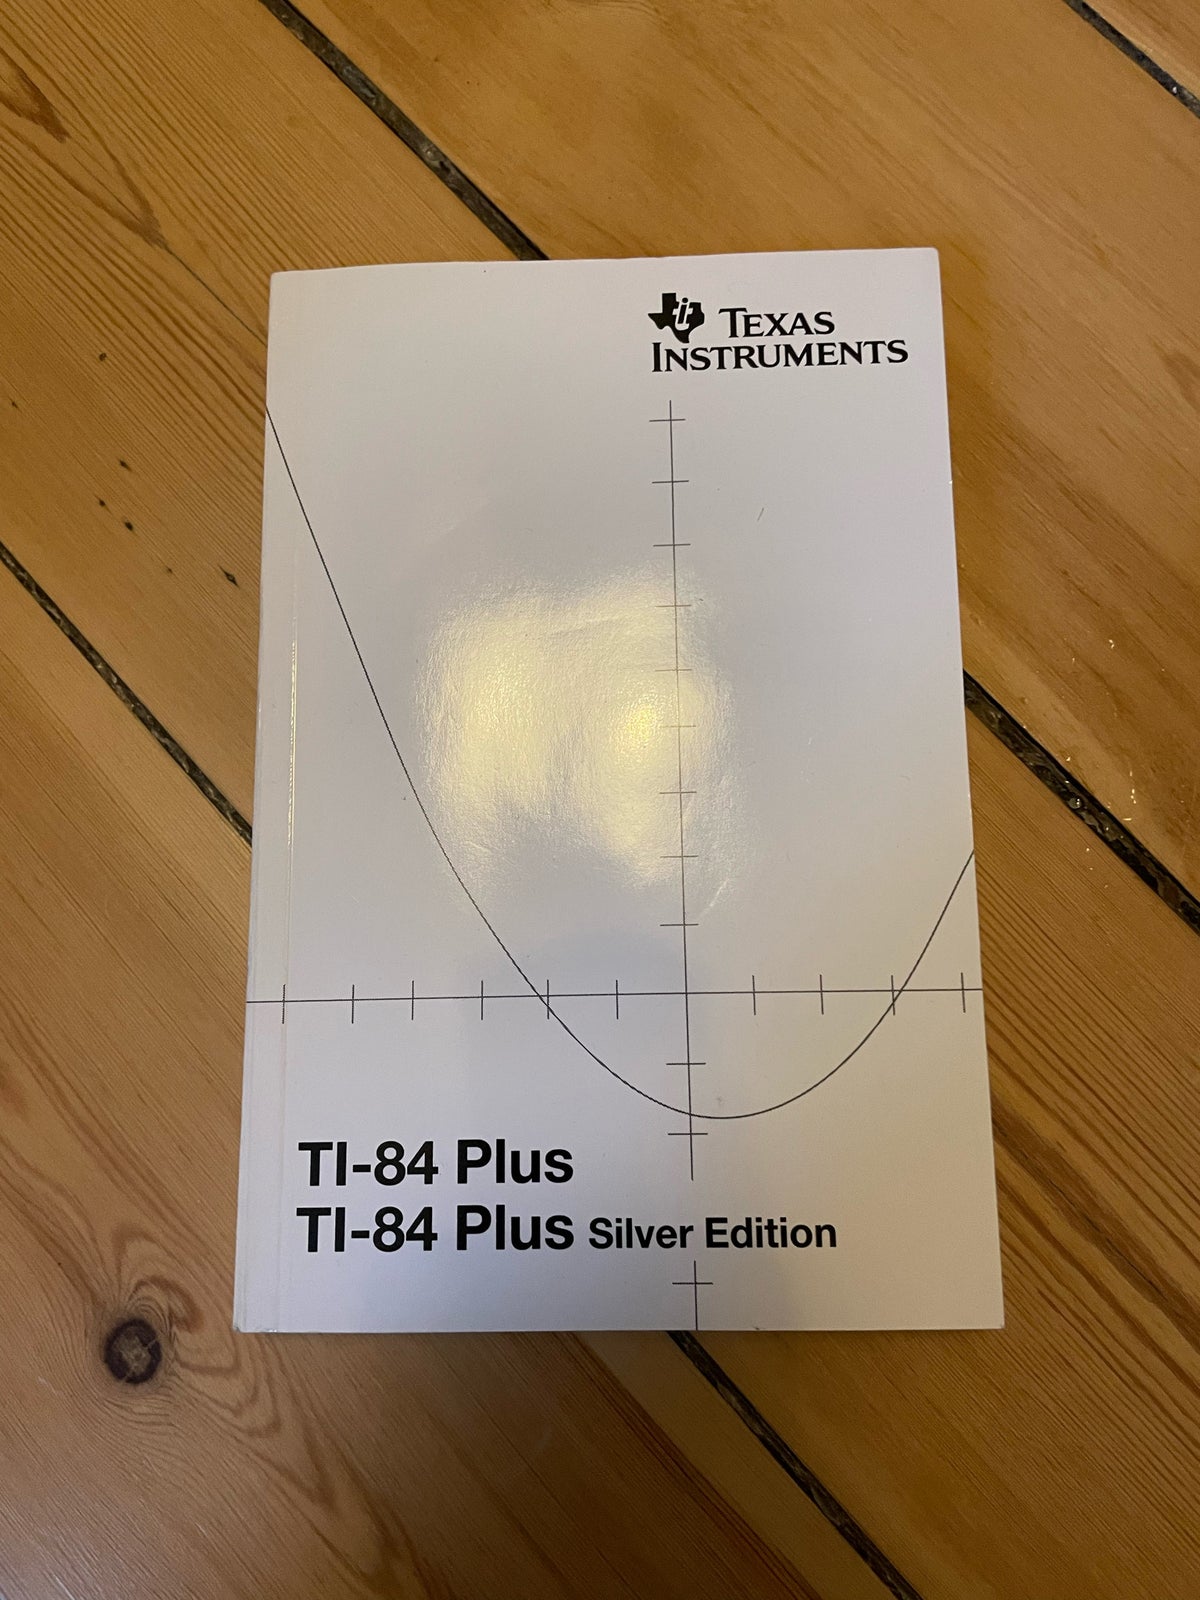 Texas instruments TI-84 Plus